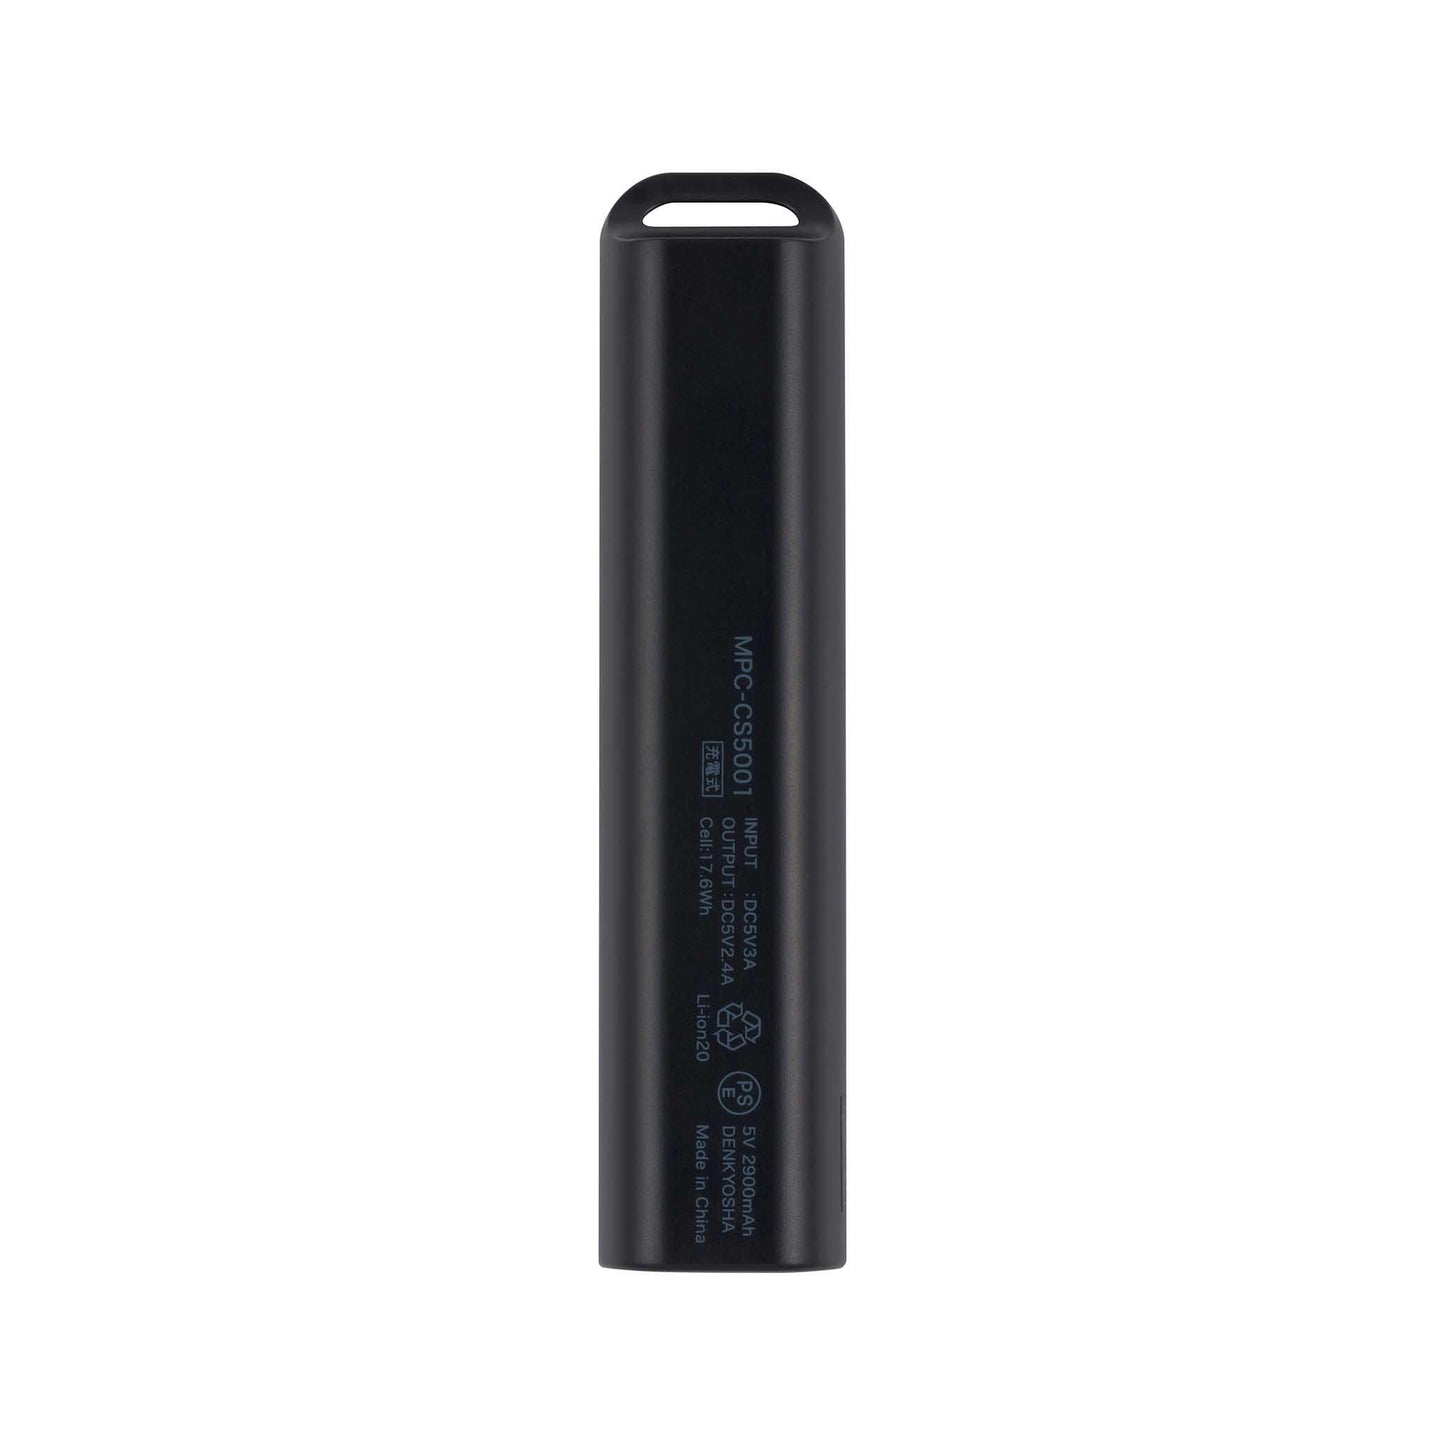 スティック型モバイル充電バッテリー MPC-CS5001